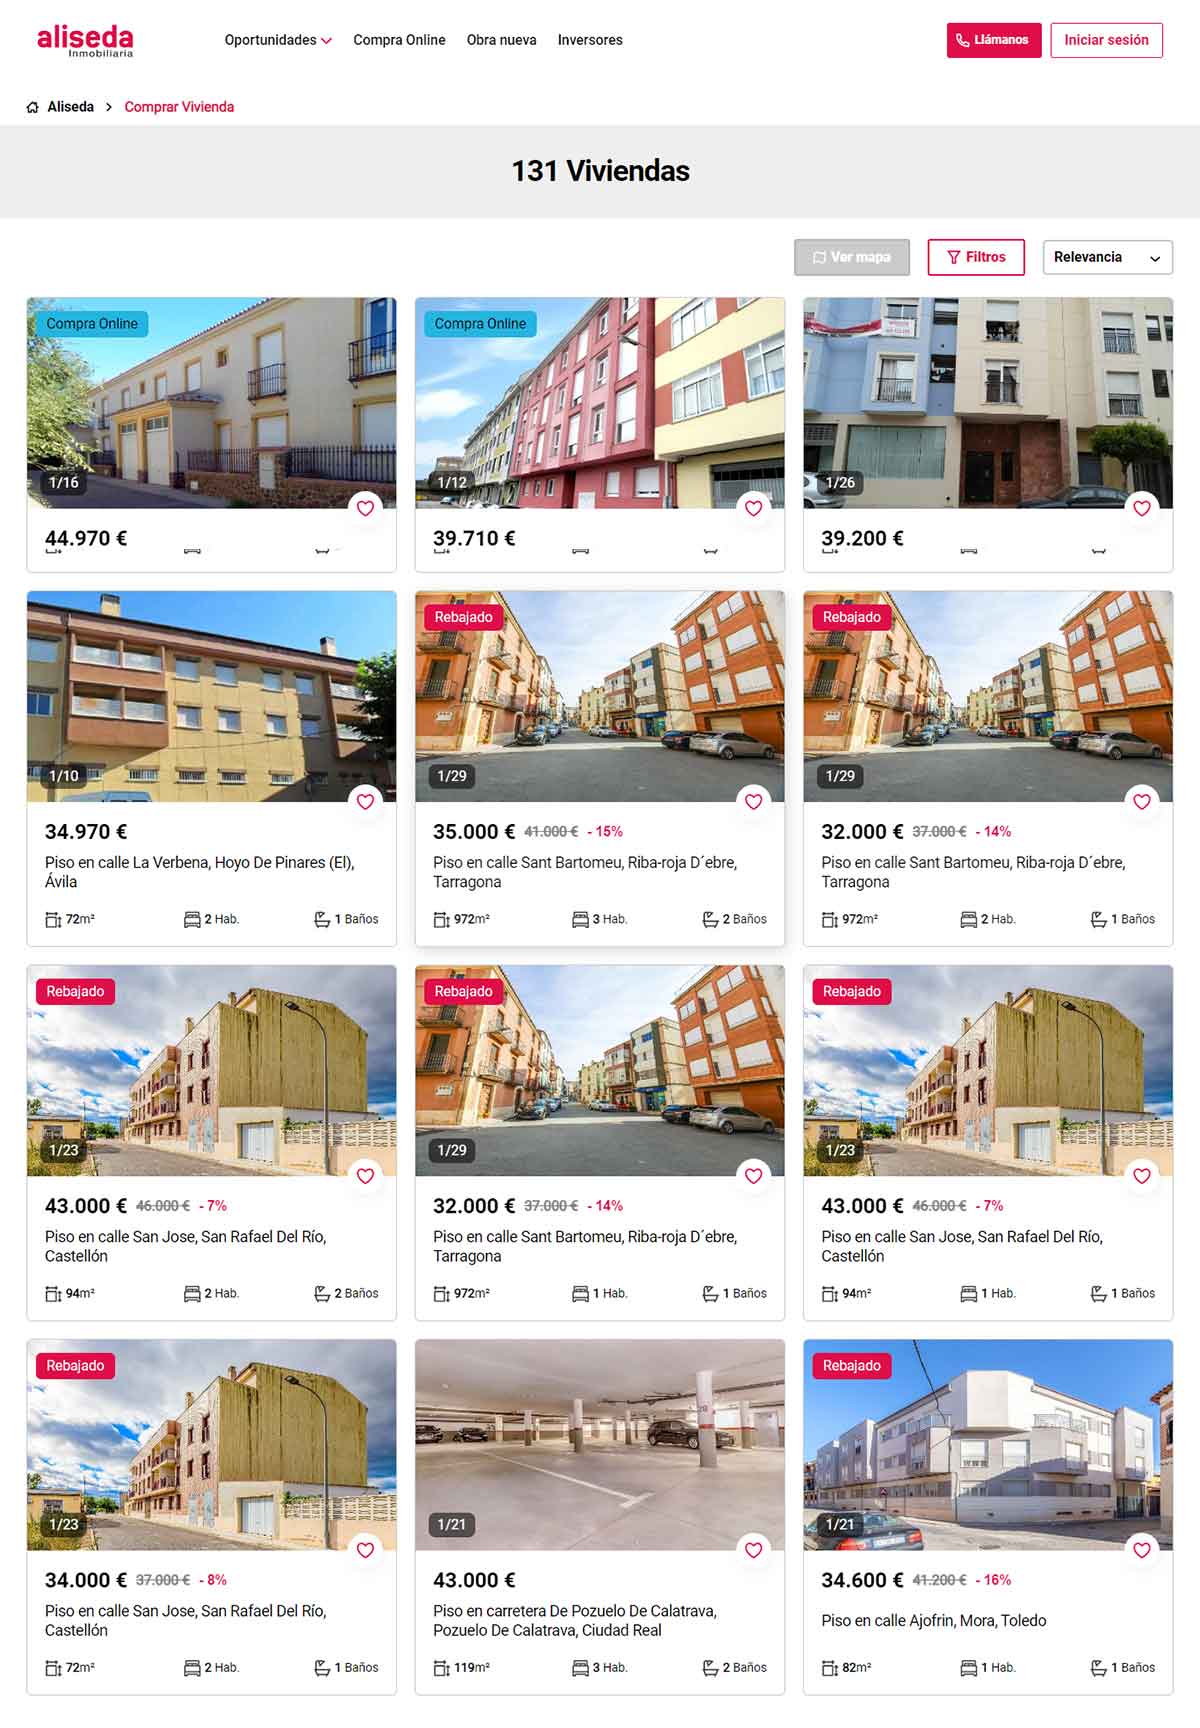 Catálogo de viviendas en Aliseda